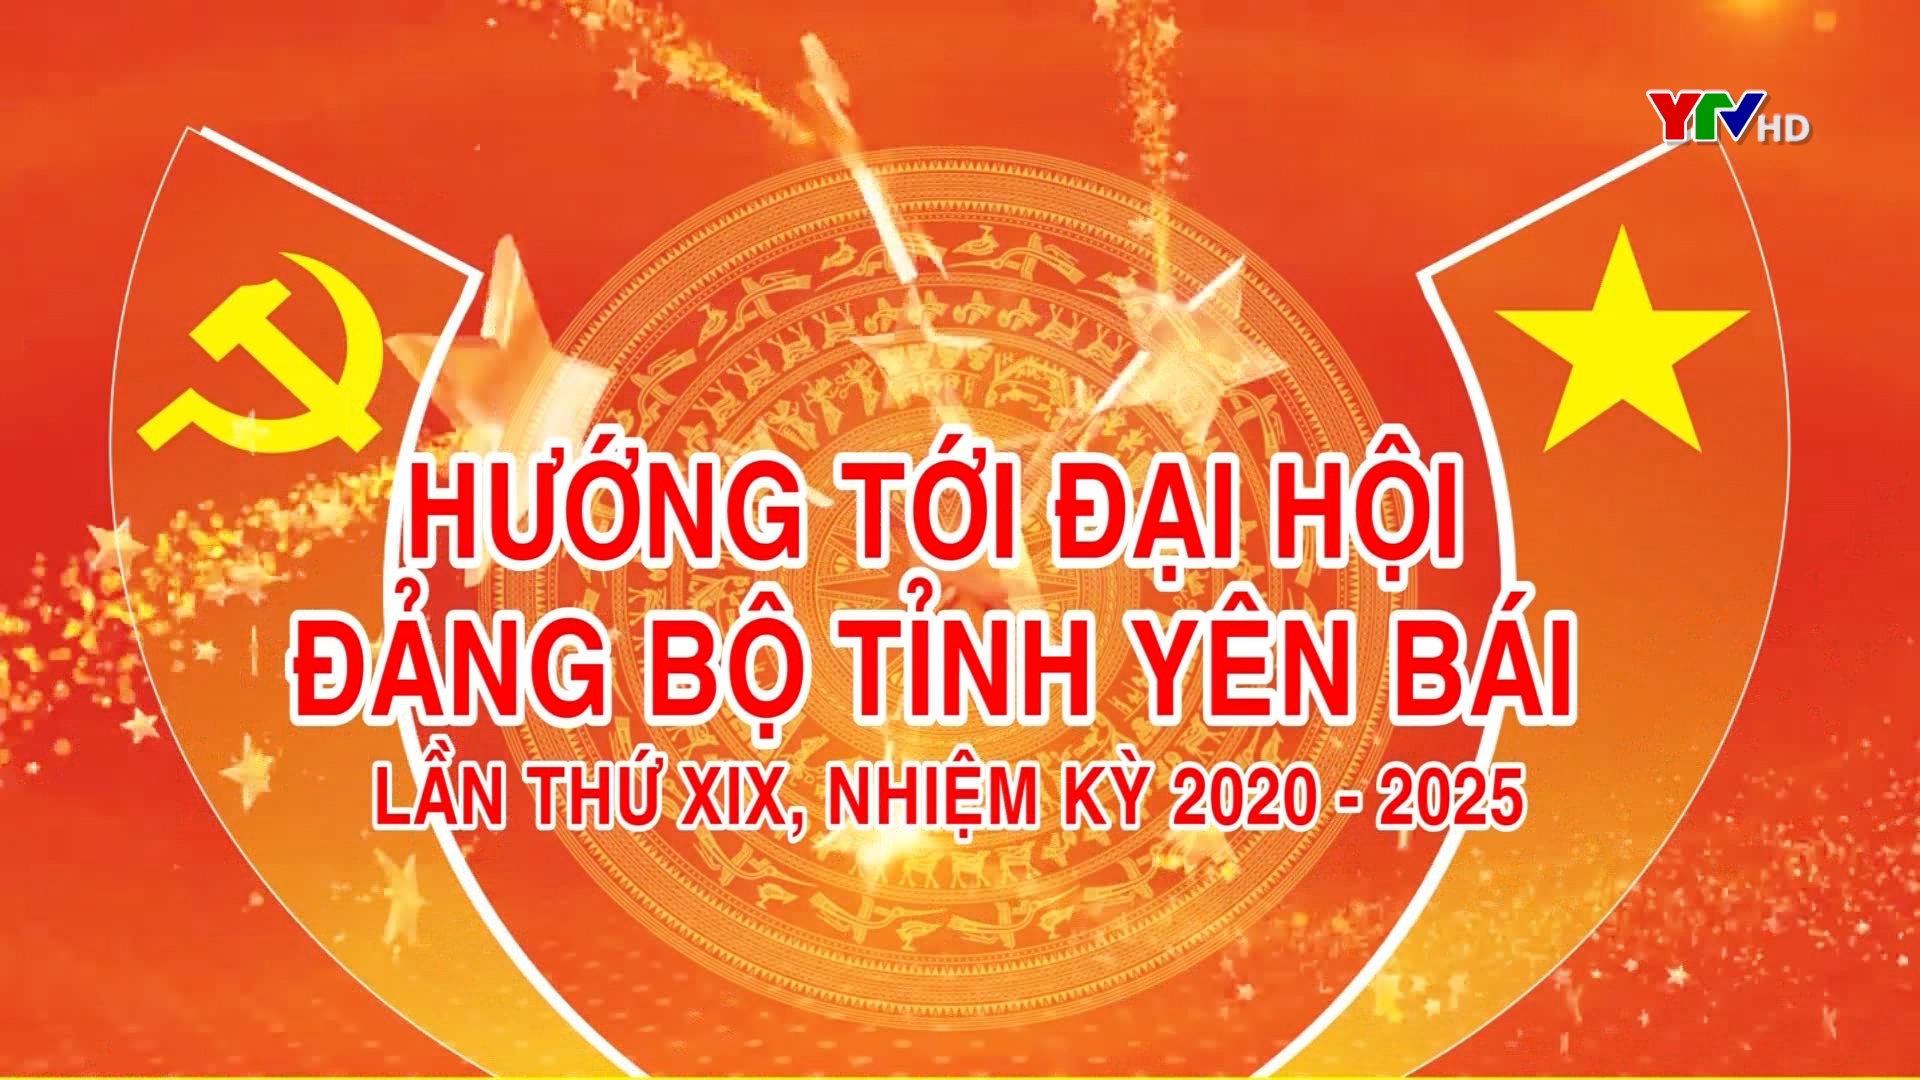 Các công trình thanh niên chào mừng Đại hội Đảng bộ tỉnh Yên Bái lần thứ XIX